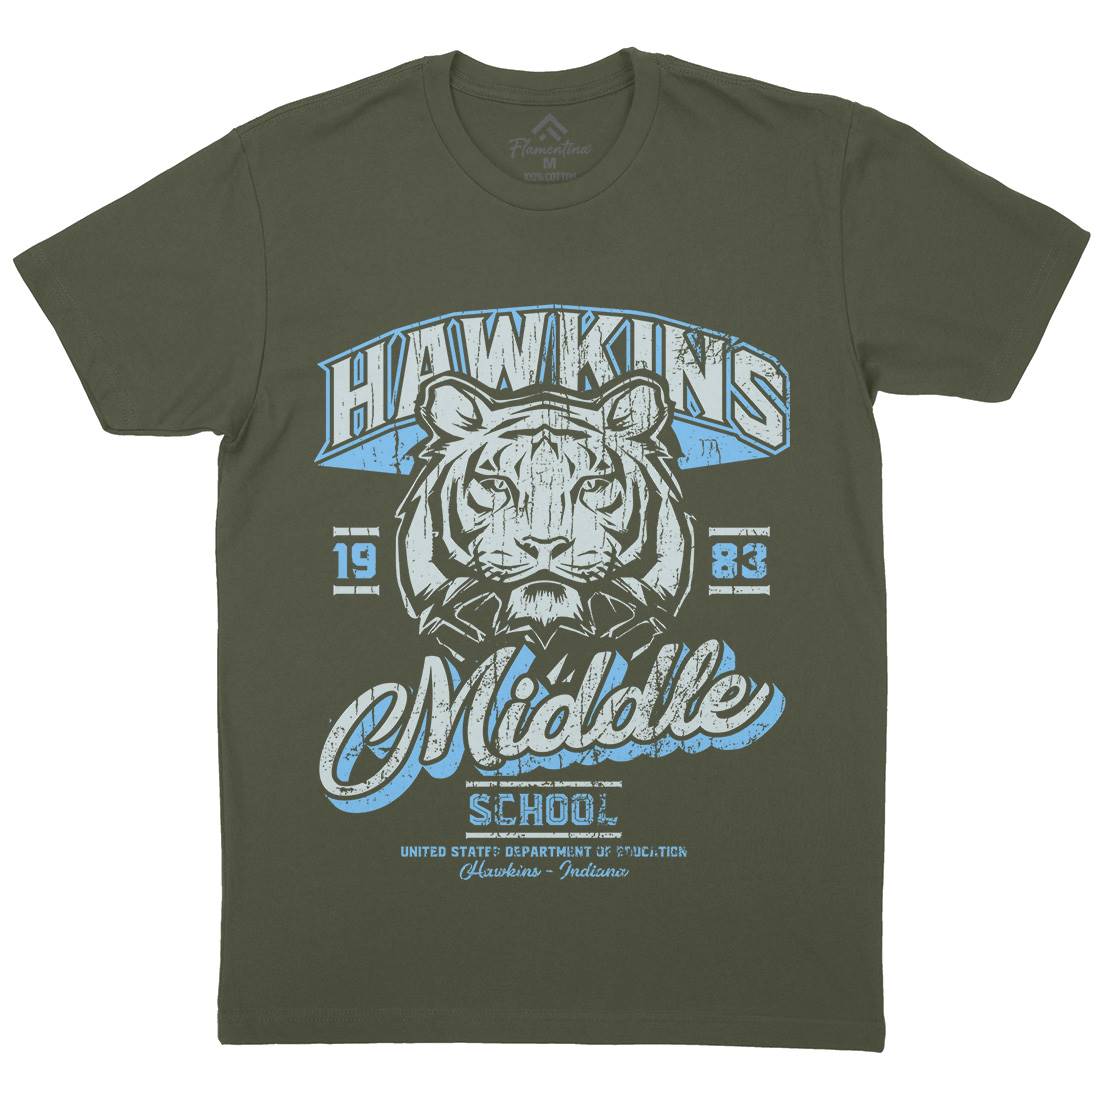 Hawkins School Mens Crew Neck T-Shirt Horror D144